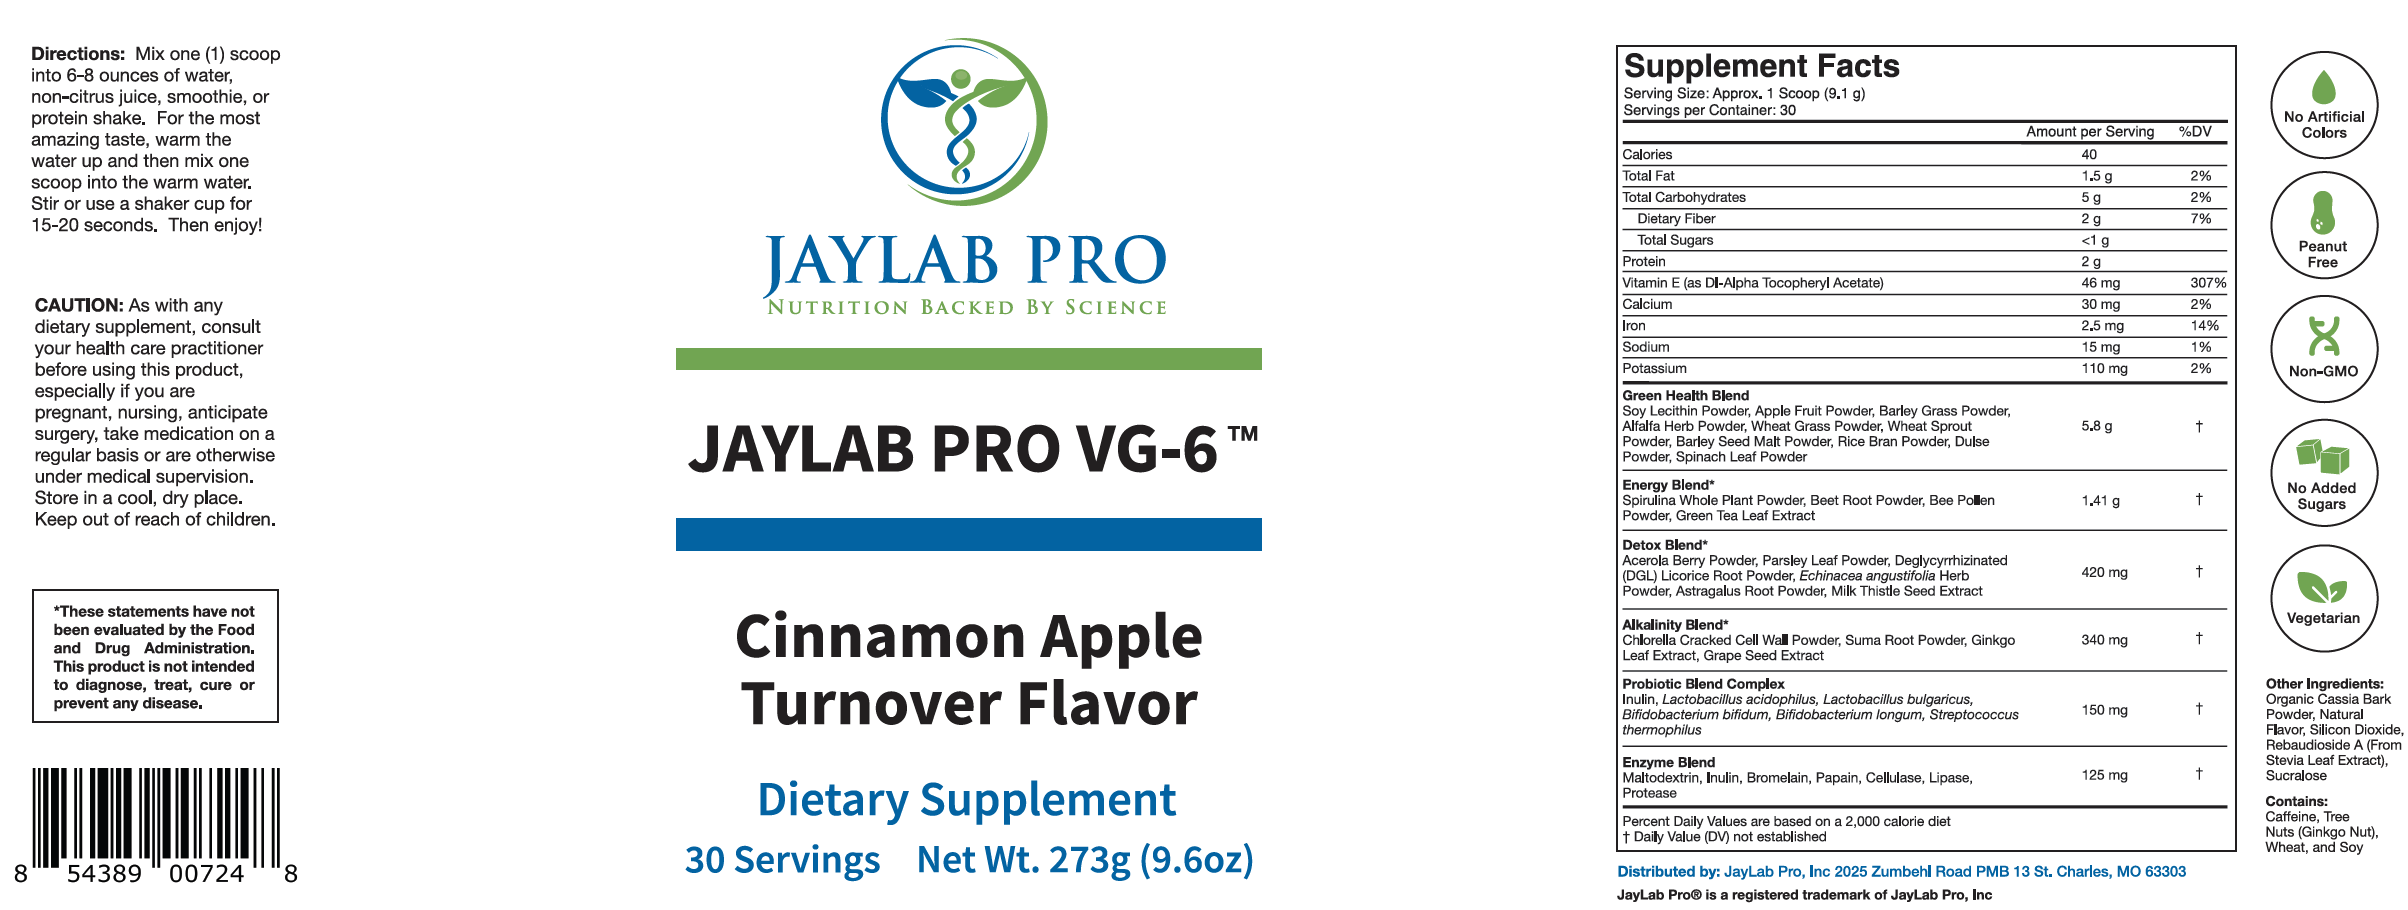 Jaylab Pro Nutrition